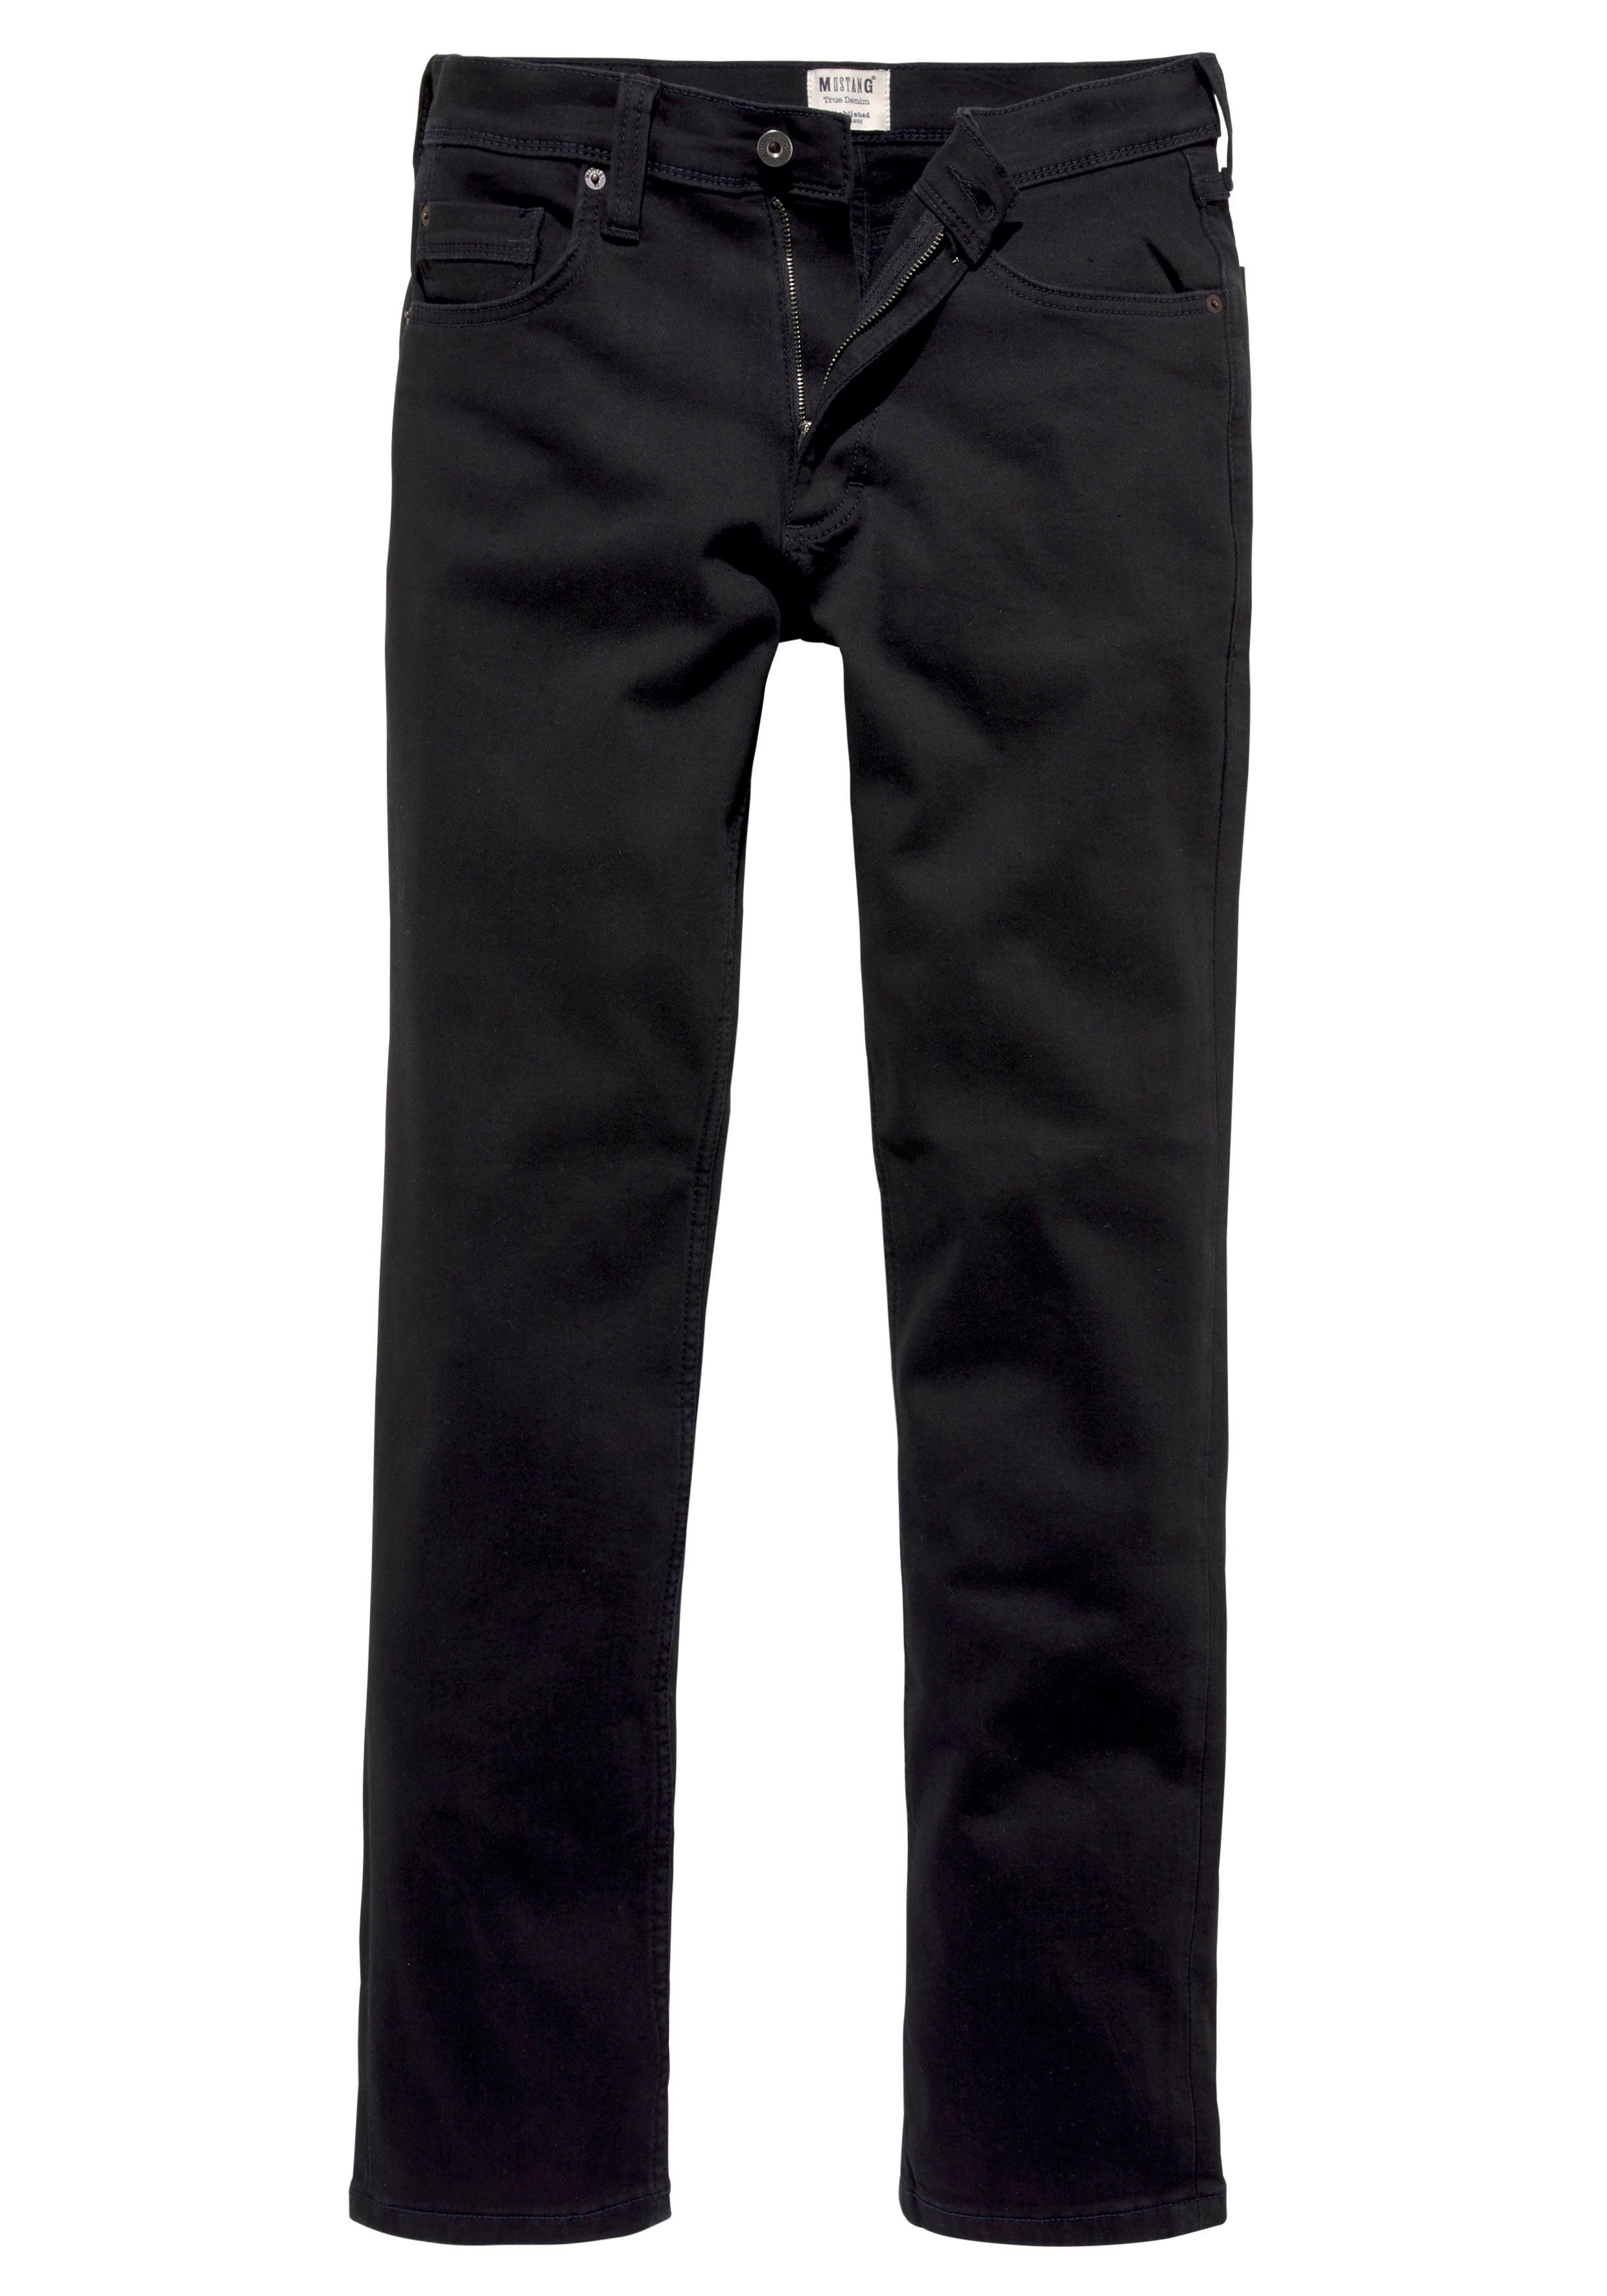 MUSTANG 5-Pocket-Jeans Style Washington Straight mit leichten Abriebeffekten